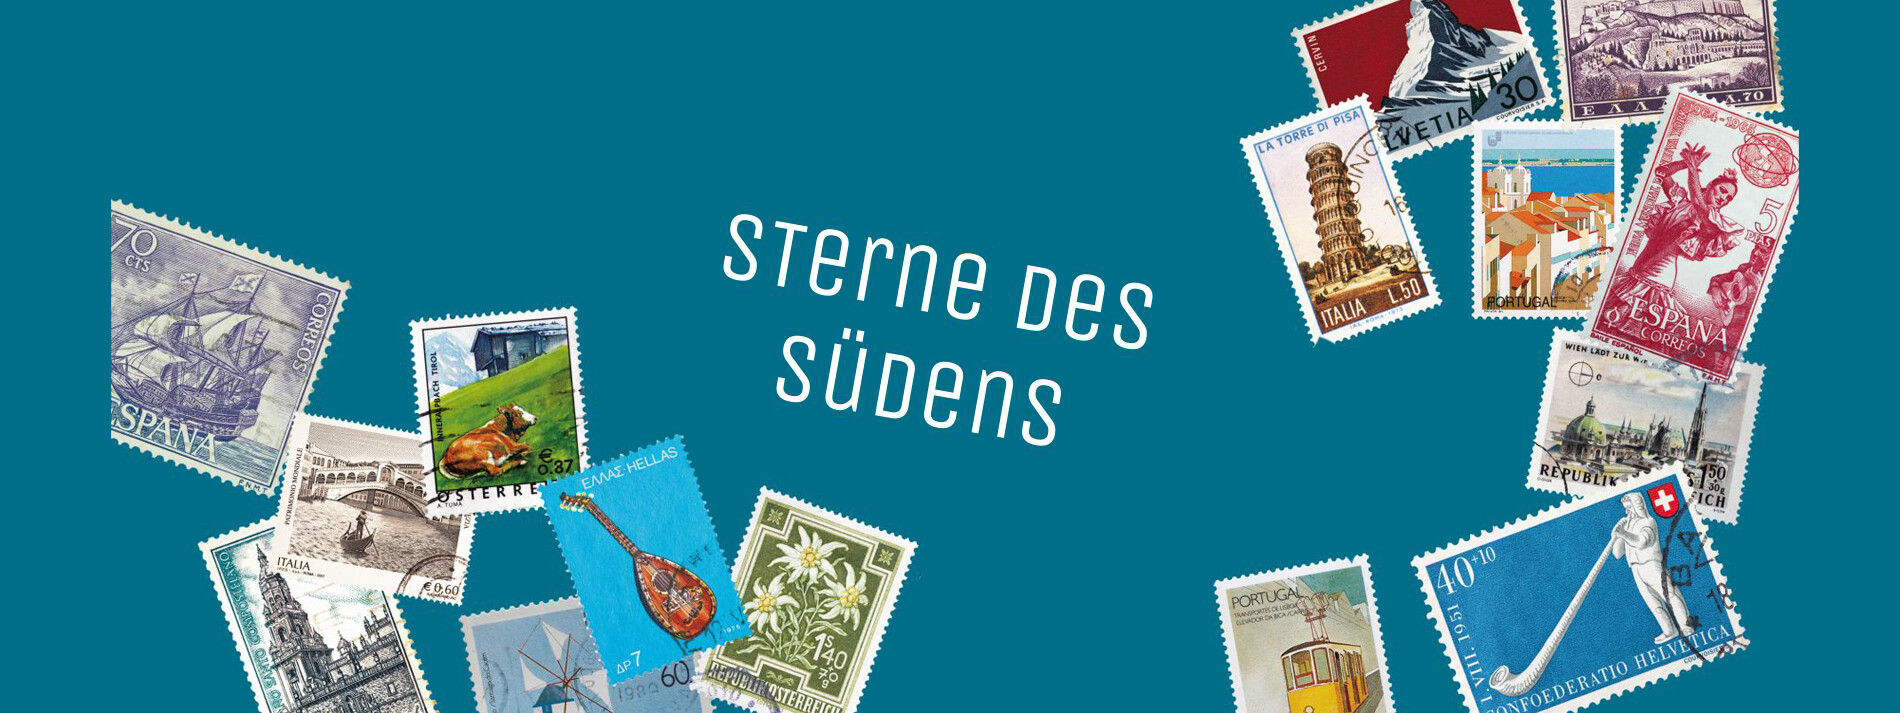 Diverse Briefmarken von südeuropäischen Ländern auf einem blauen Hintergrund mit Beschriftung "Sterne des Südens" ©Design: www.poetter.com, Fotos: AdobeStock©Silvio/zatletic/laufer/rnl/KorSol/zabanski/Lefteris Papaulakis